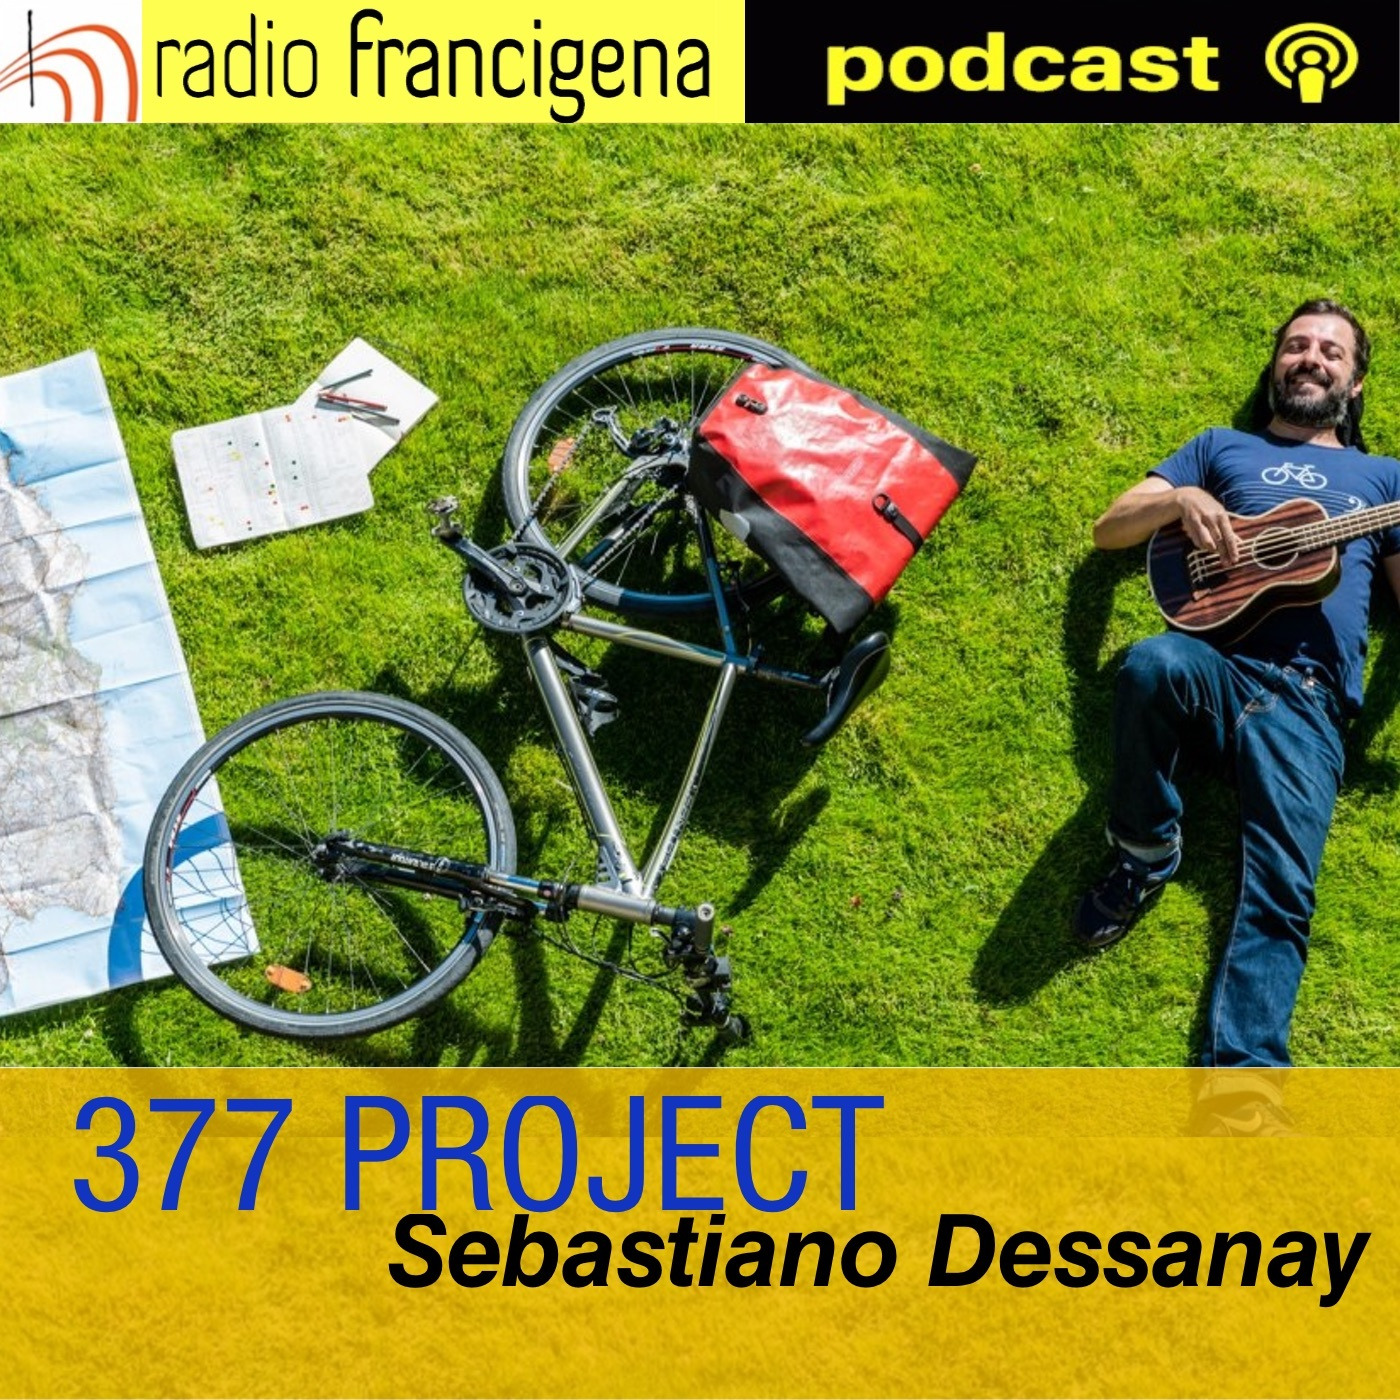 377 PROJECT - Sebastiano Dessanay -  Gli imprevisti 16